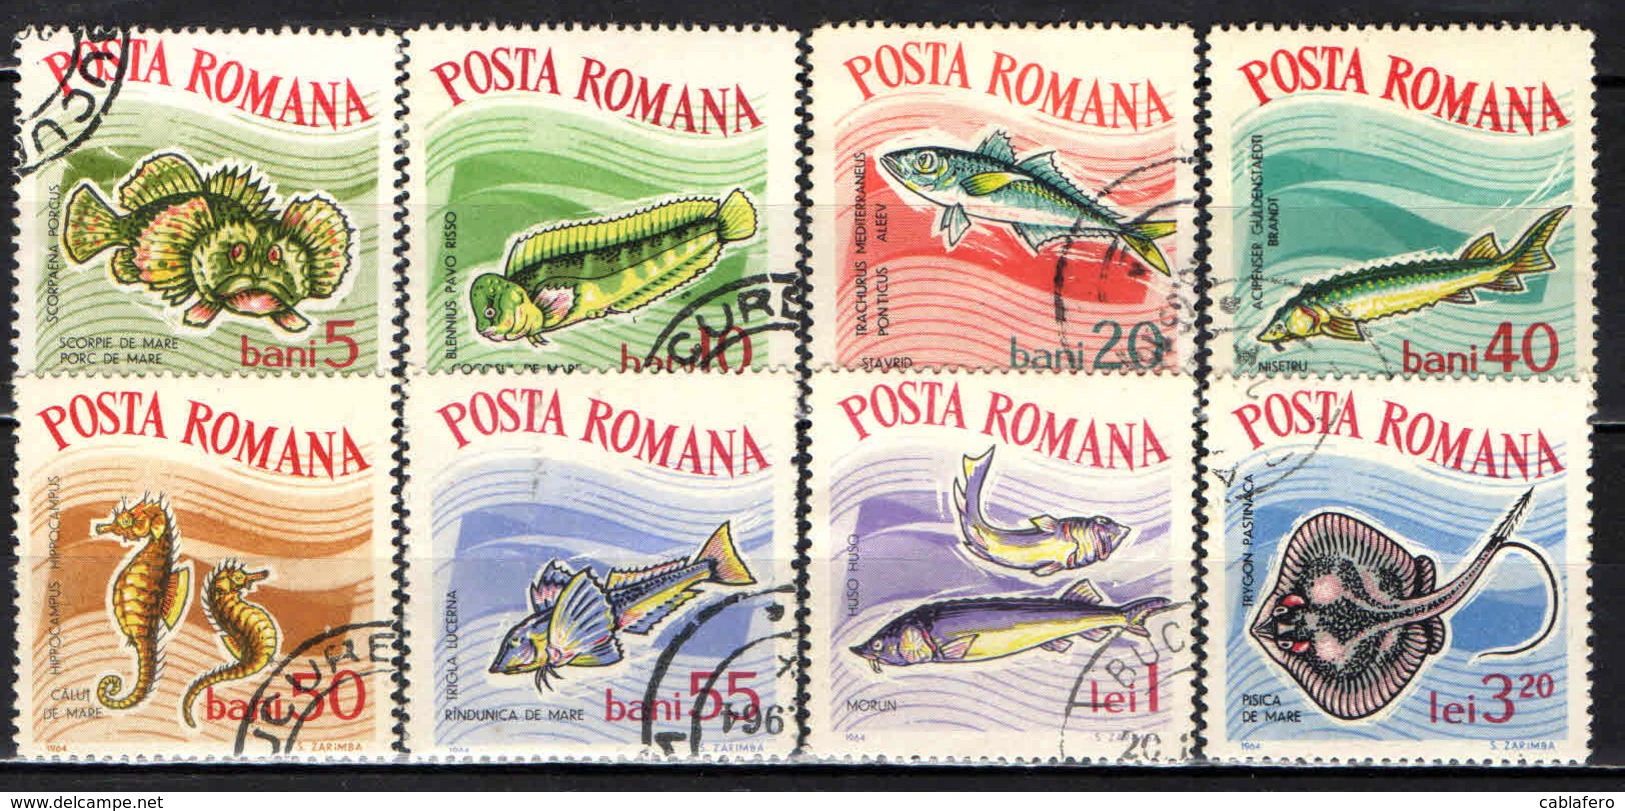 ROMANIA - 1964 - Fish (Constanta Aquarium) - USATI - Usati